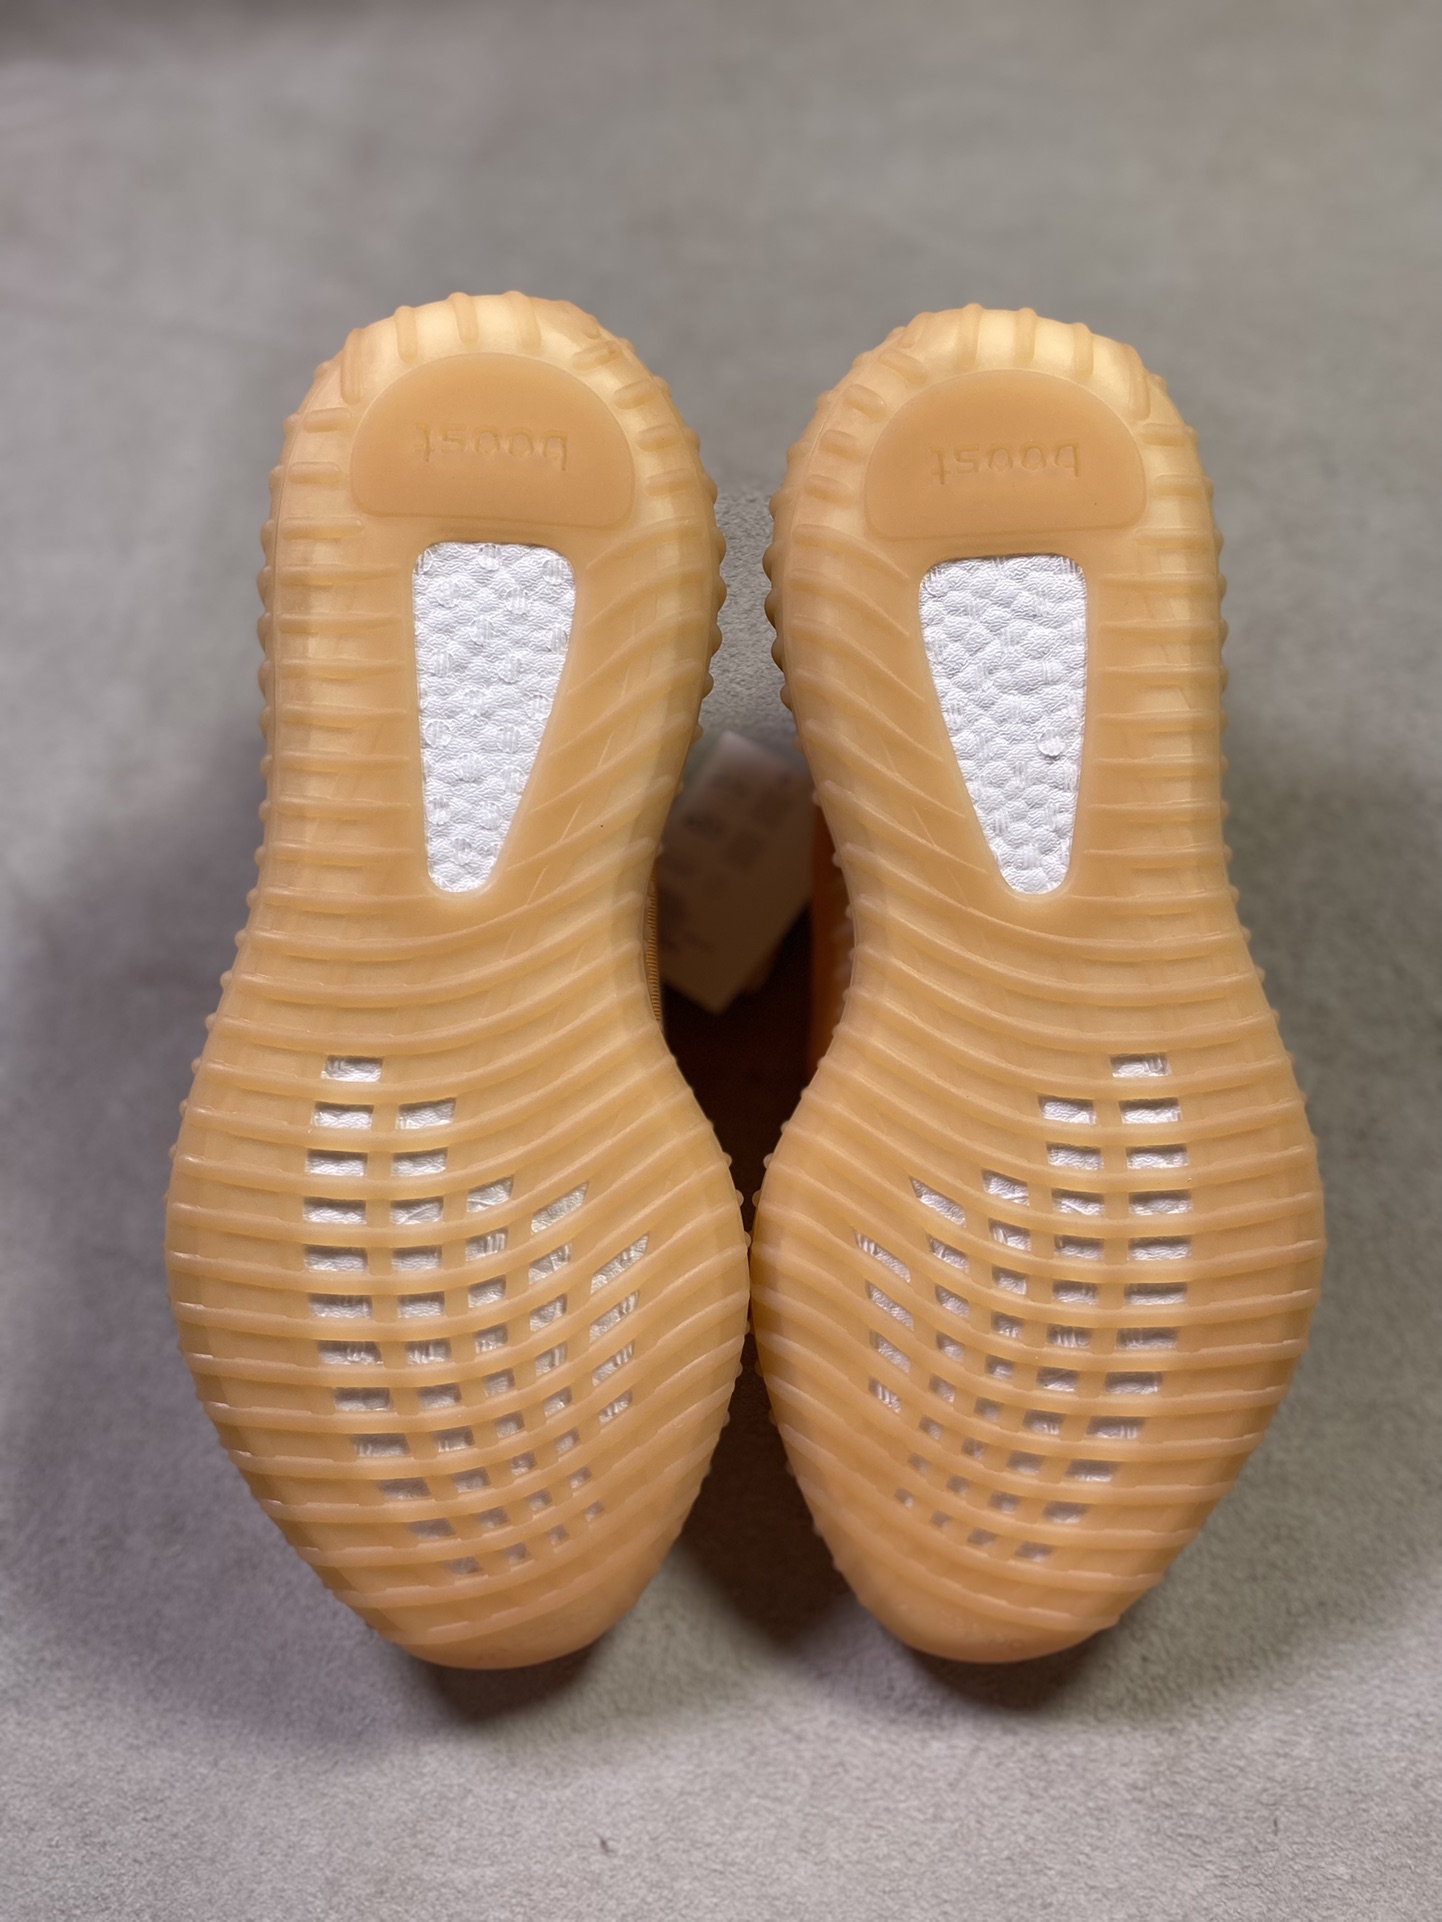 YEEZY350v2“MonoClay”黏土最强性价比版本V2全新全透网纱系列懂货的看鞋型一眼便知不用赘